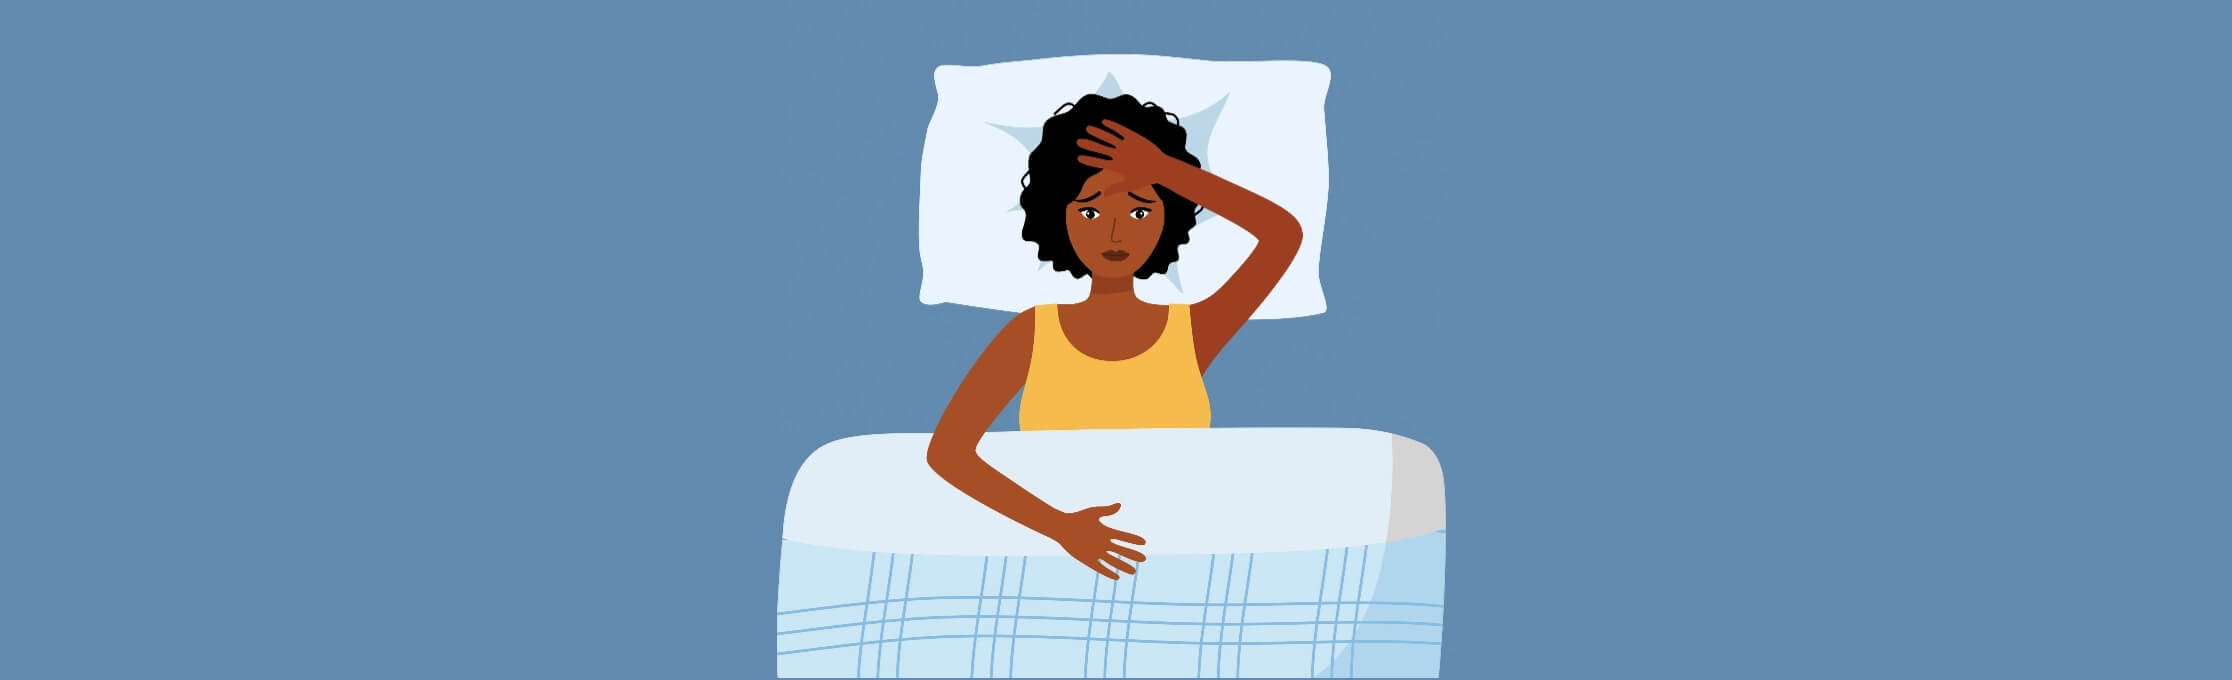 Dormir bien: tu aliado contra los dolores musculares y articulares